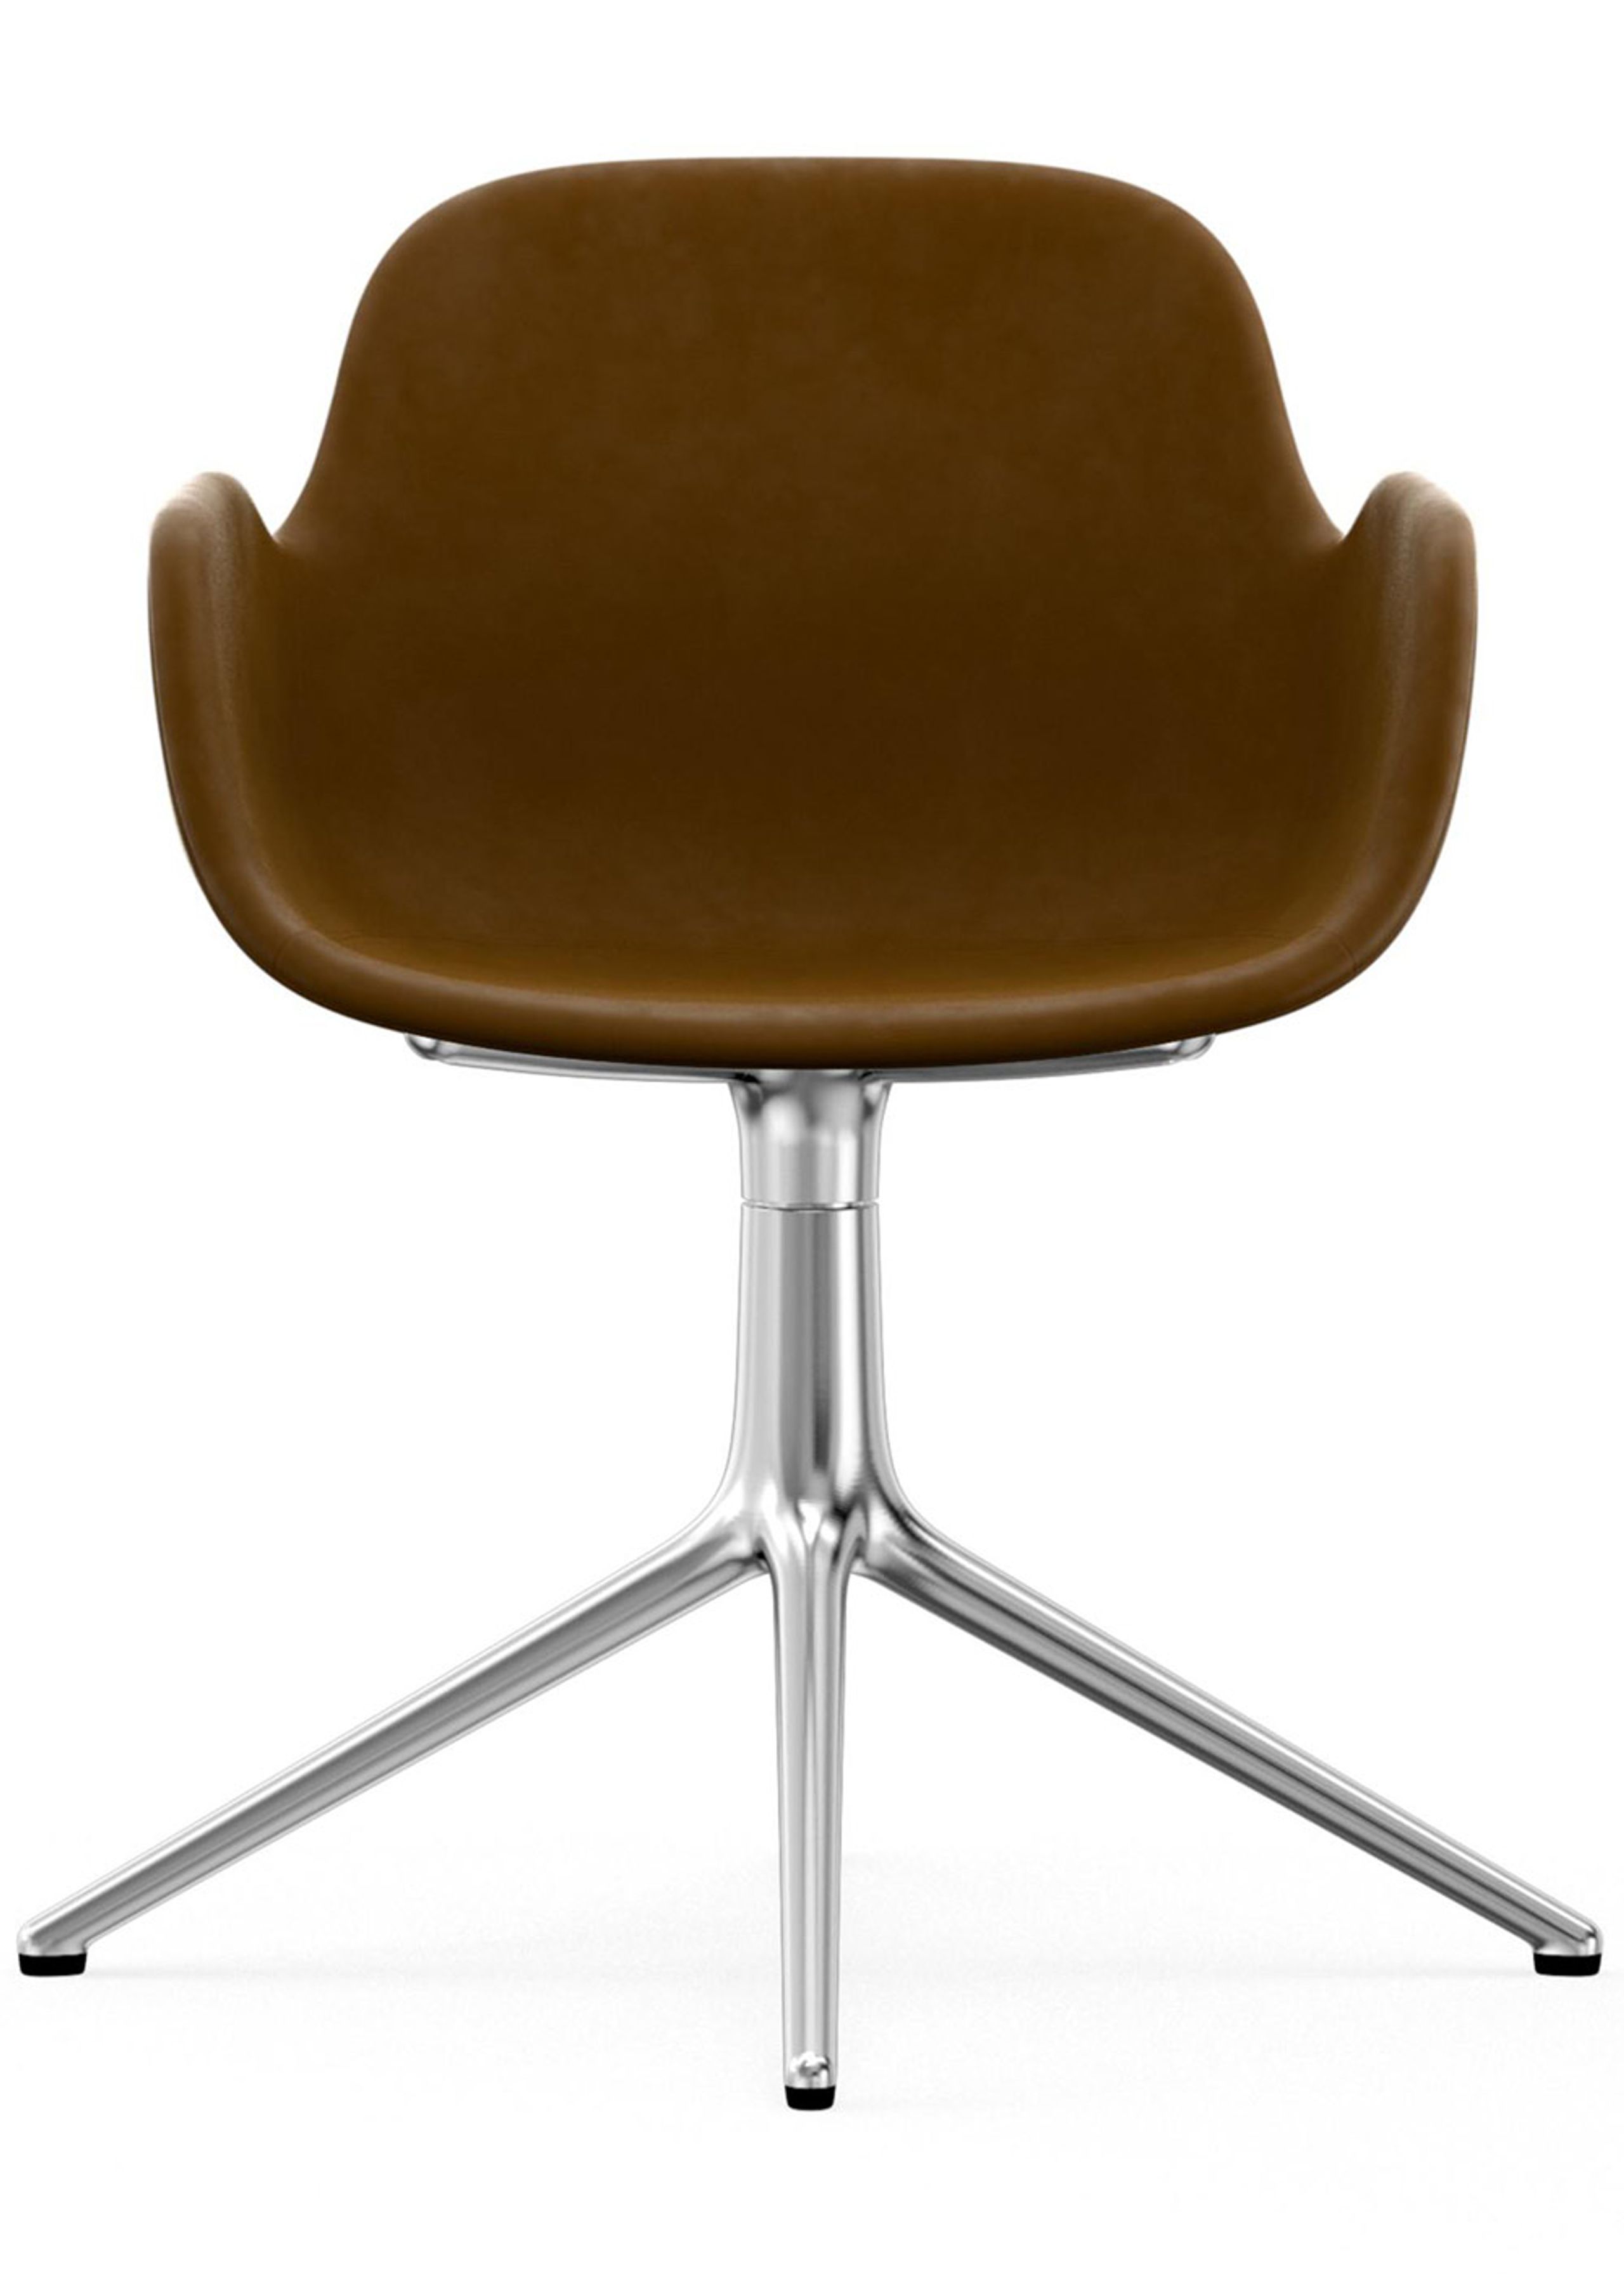 Normann Copenhagen - Poltrona - Form Armchair - Swivel 4L Full Upholstery - Frame: Aluminium / Fabric: City Velvet vol. 2 30